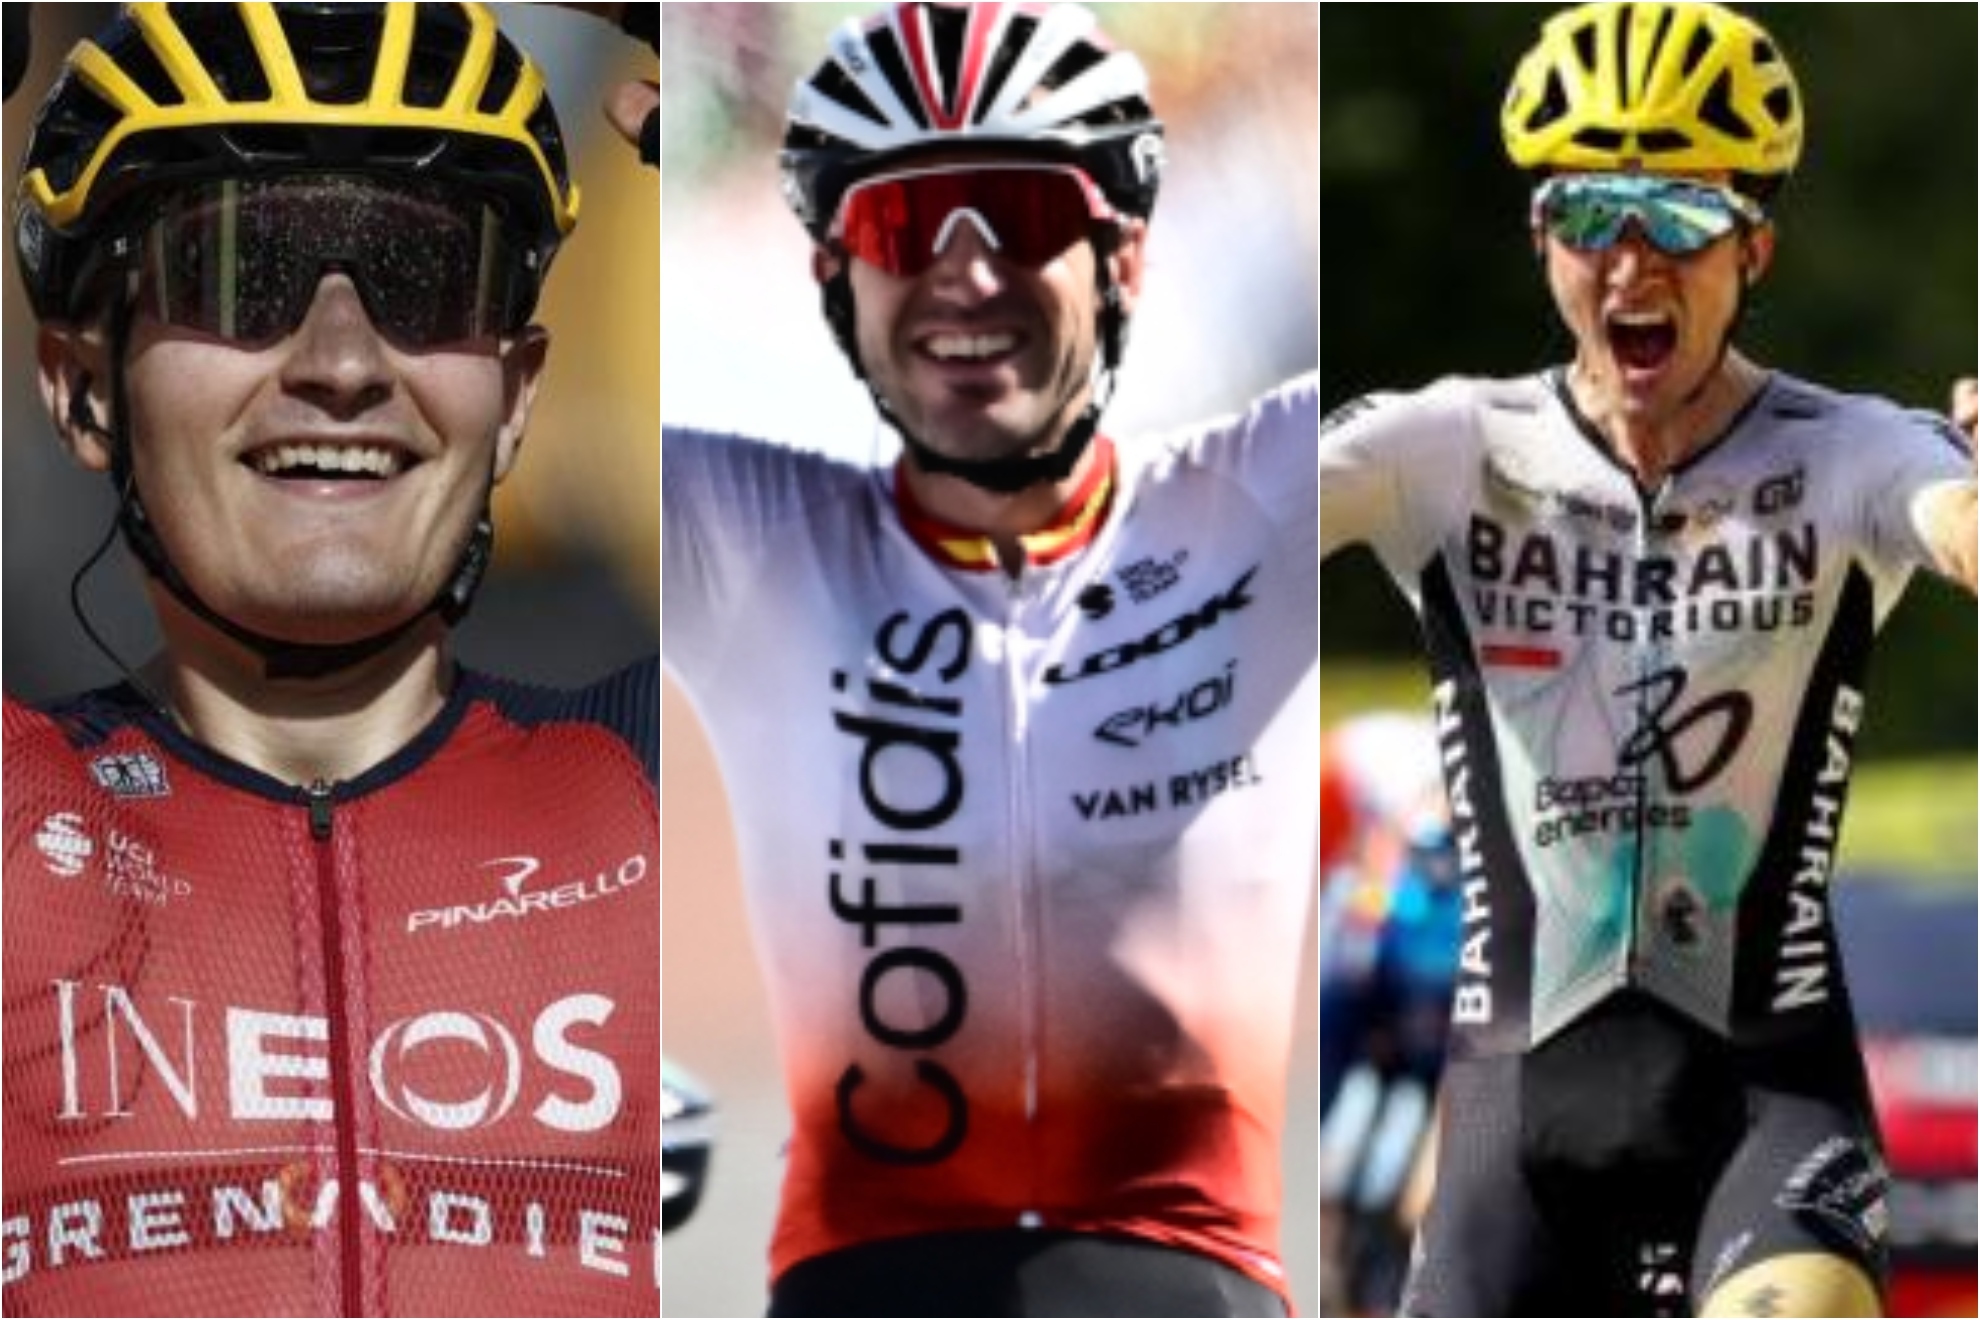 El Tour vuelve a hablar español: tres victorias y dos españoles peleando por el podio